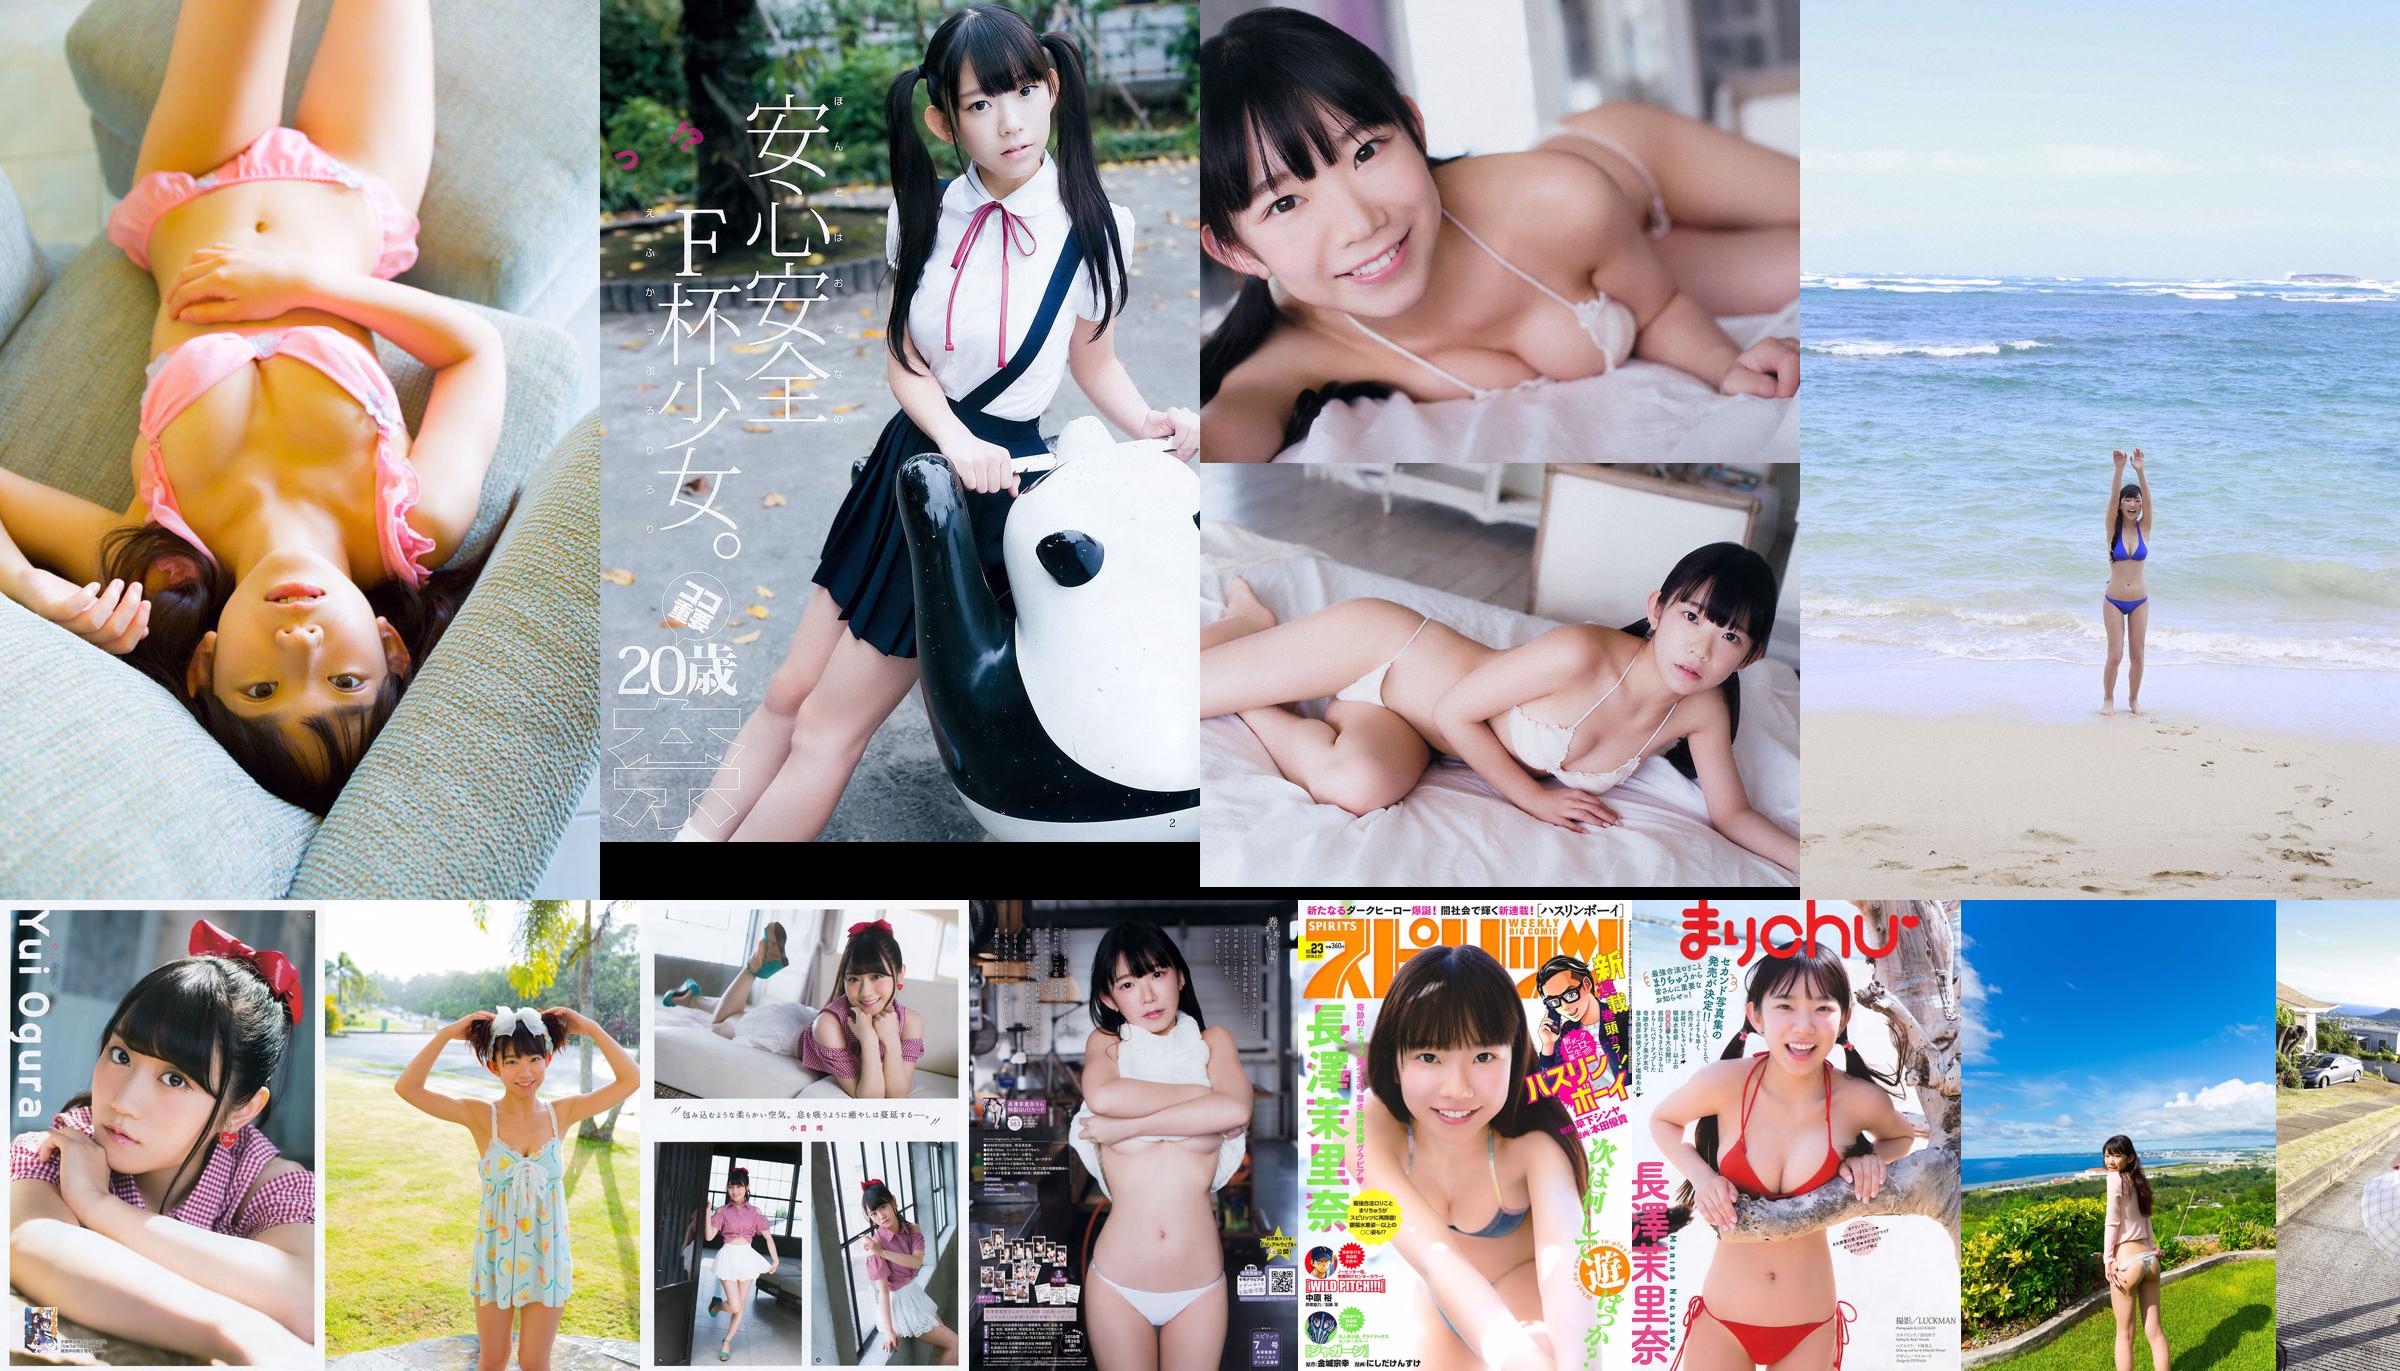 [WPB-net] Extra No. 584 Marina Nagasawa Nagasawa Morina "Bah っ て き た Legal Rory Big Tits !! Cảm giác tội lỗi" No.41e12f Trang 2